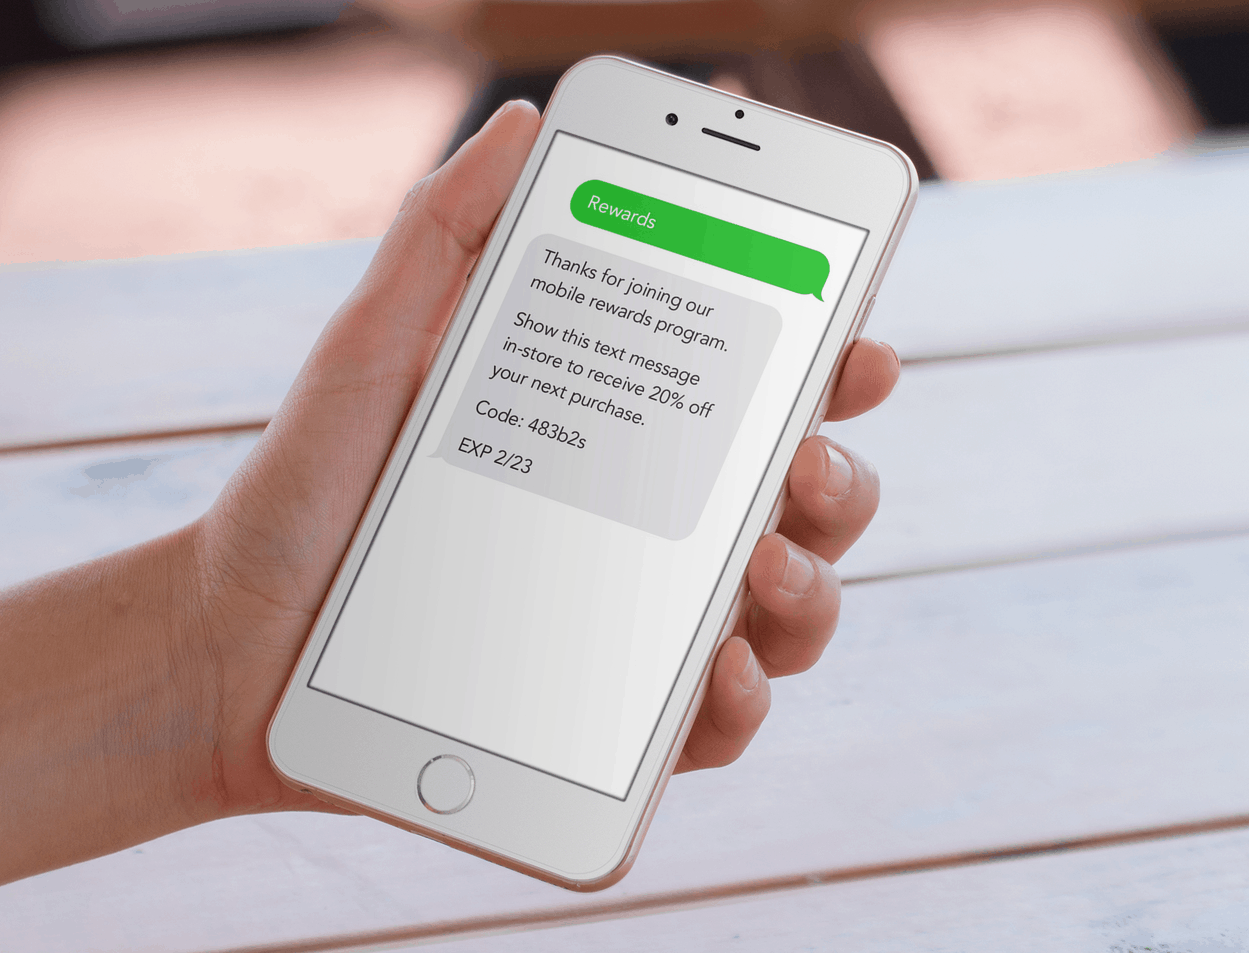 SMS Marketing to Deliver Rewards Program Messaging